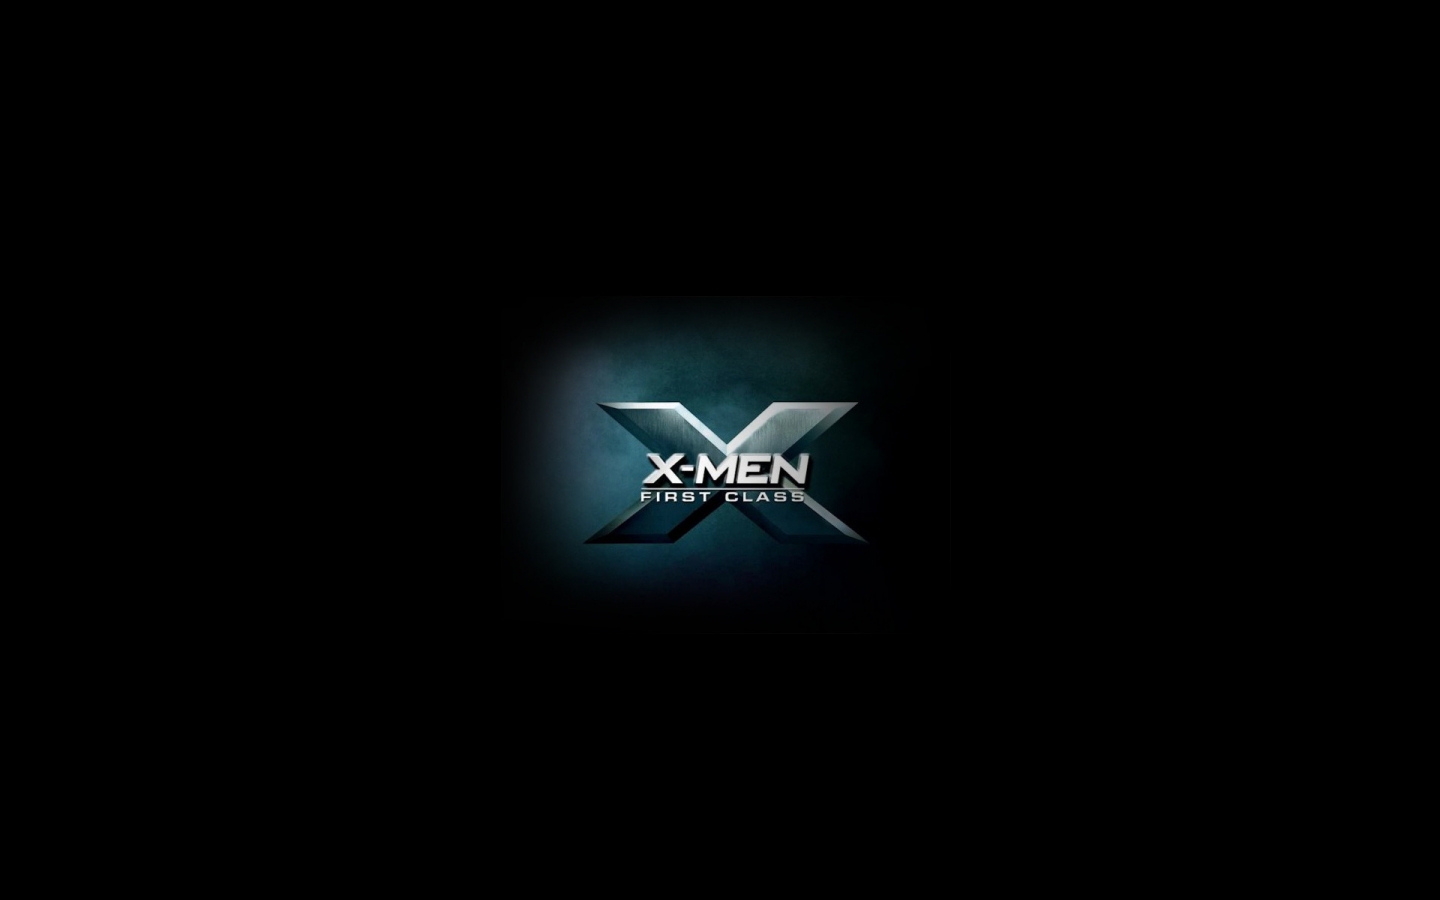 X Men First Class 2011 for 1440 x 900 widescreen resolution